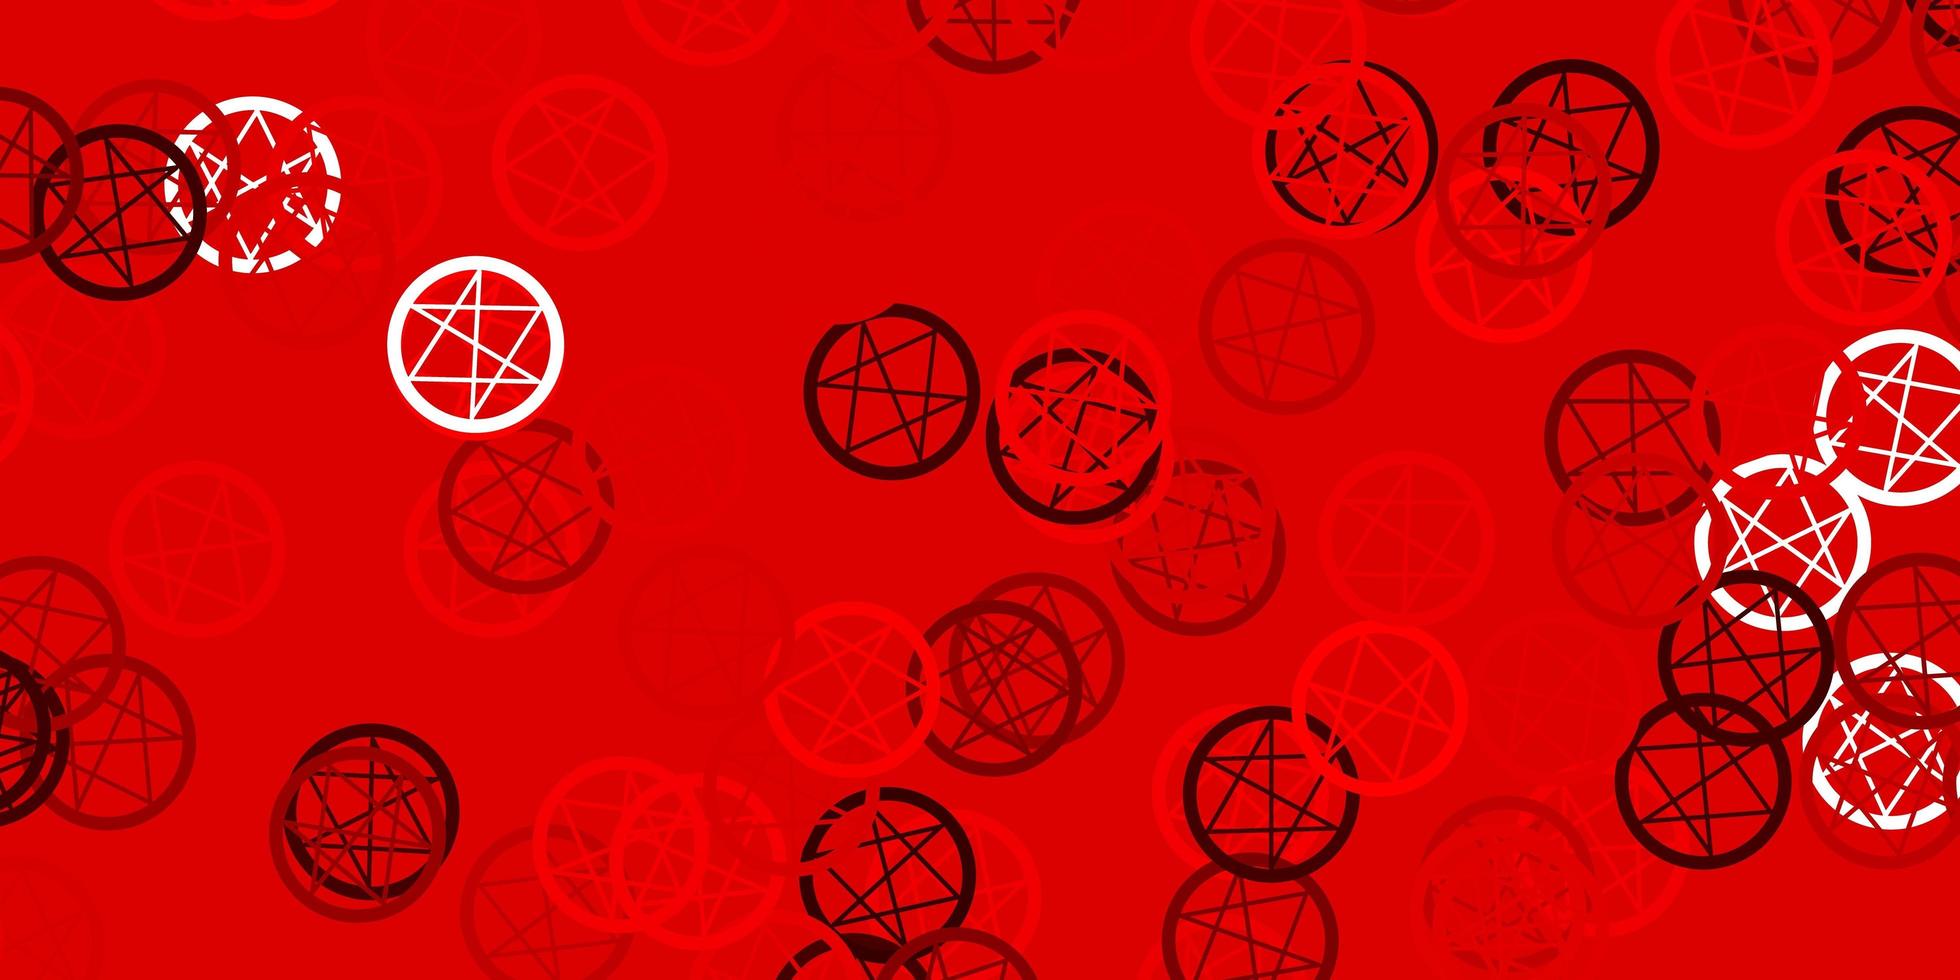 fond de vecteur rouge clair avec des symboles occultes.